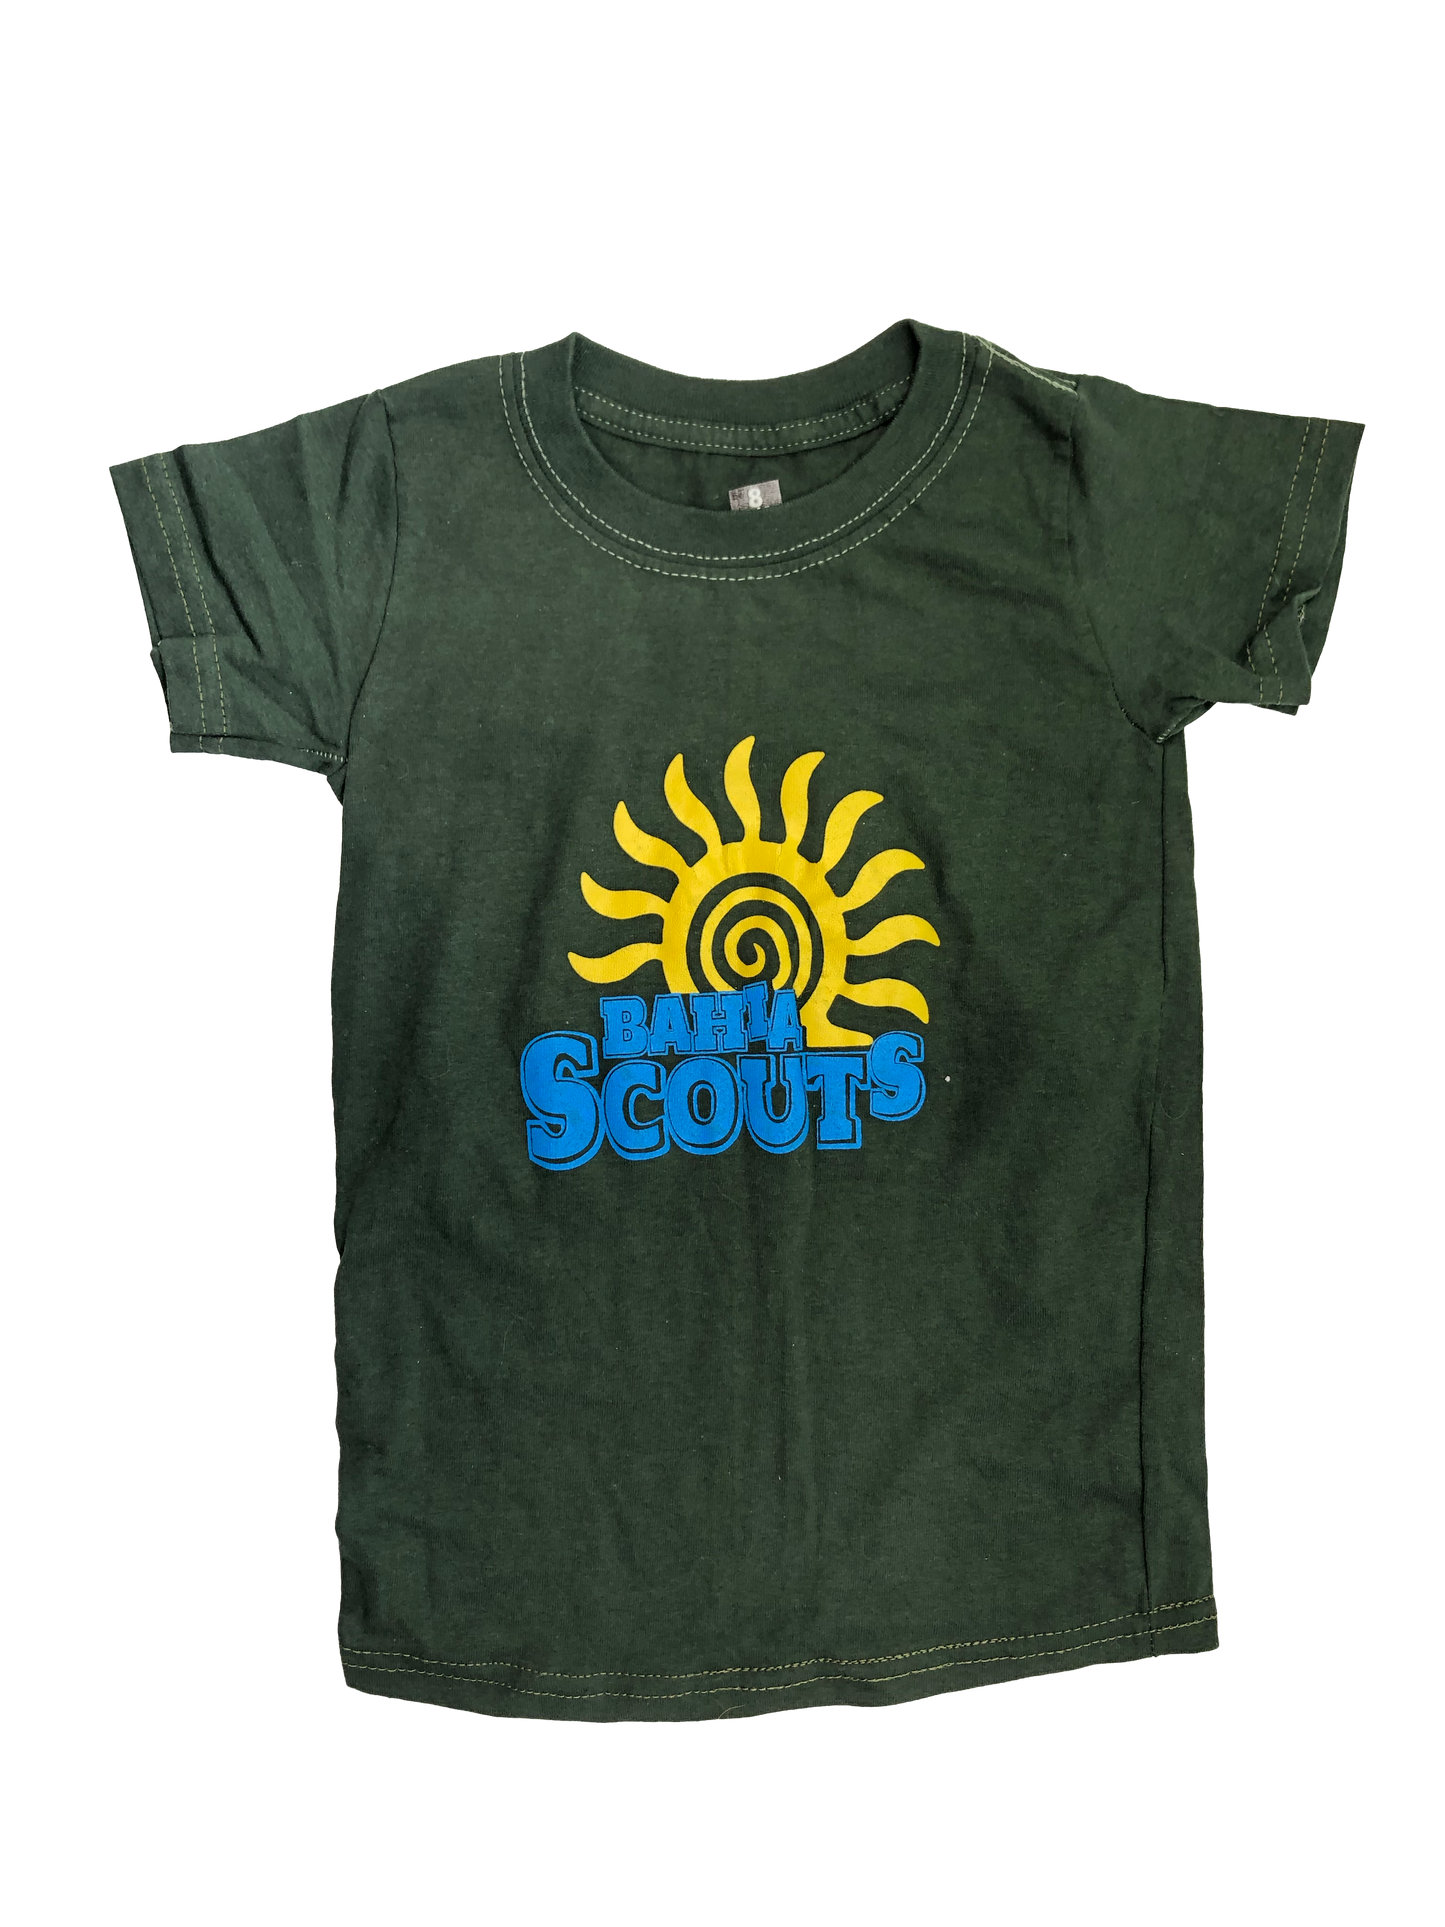 Green Bahia Scouts T-Shirt 8